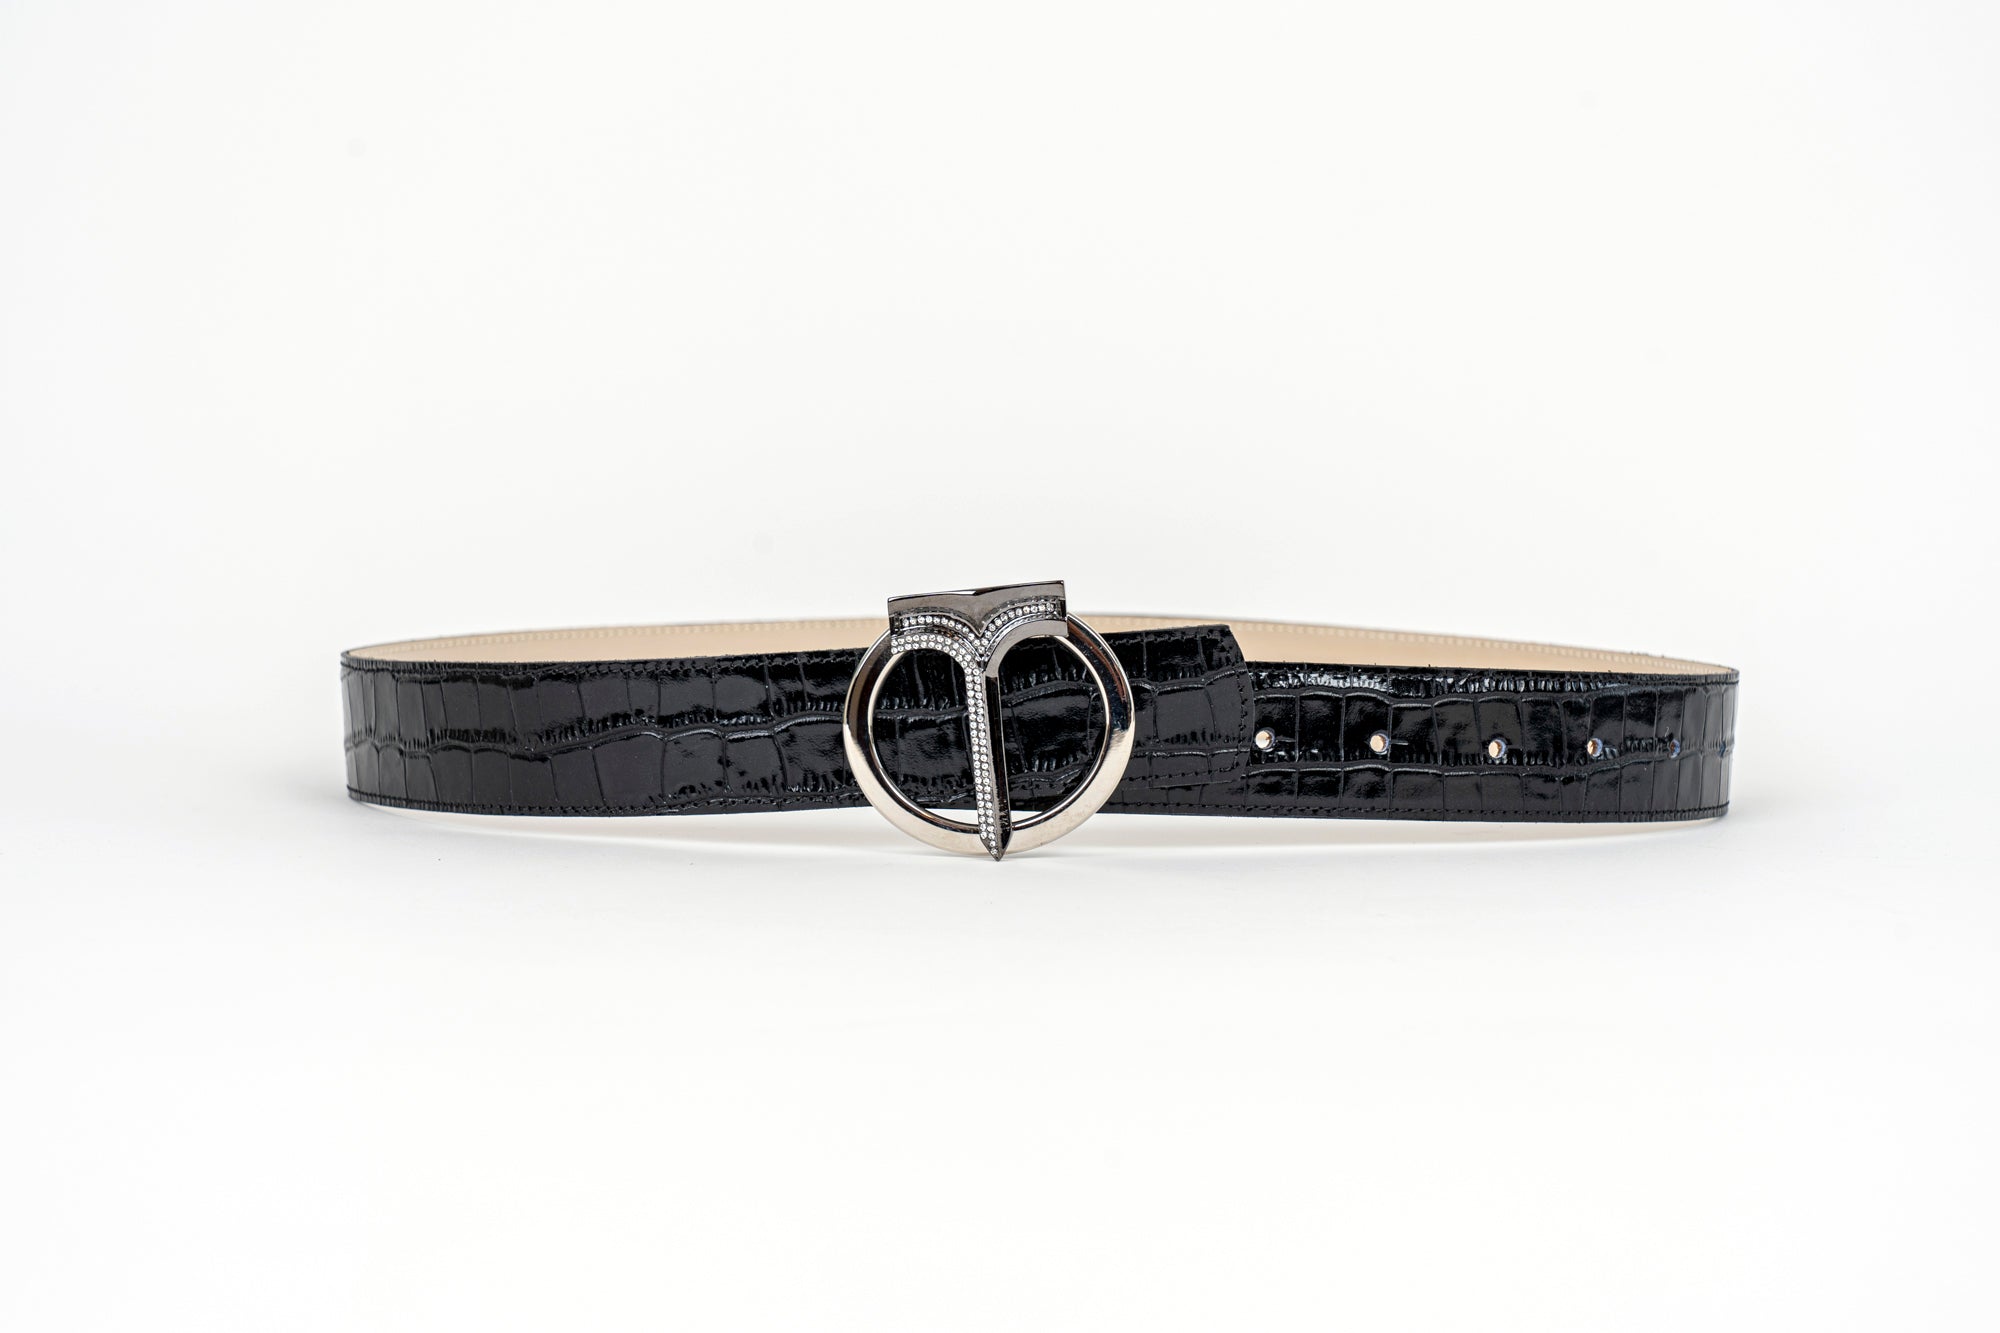 CINTURA IN PELLE DI VITELLO CON STAMPA COCCO Black/ Black Calf Leather Belt with Crocodile Print